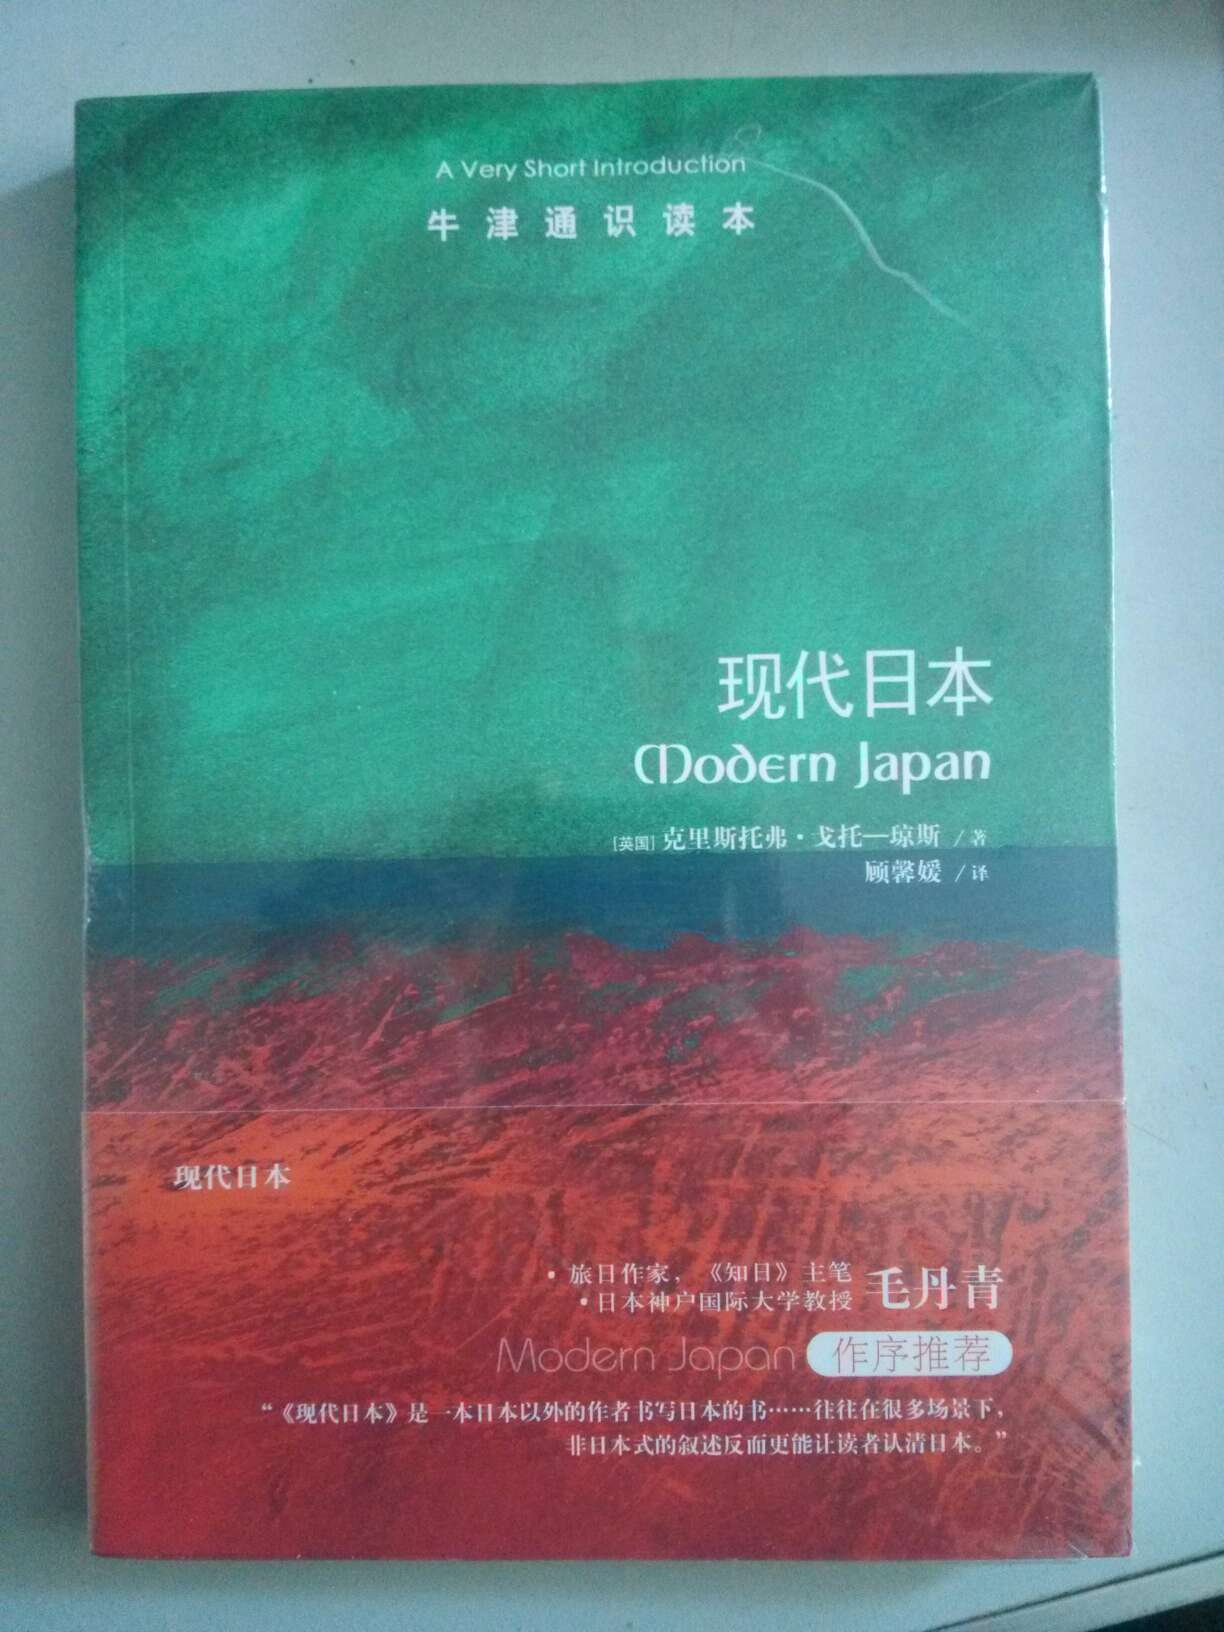 又买了一本牛津通识读本www希望借此增进自己的见识，毕竟听说菊与刀以及Jones的这本现代日本是西方对日本的两本经典书籍啊。